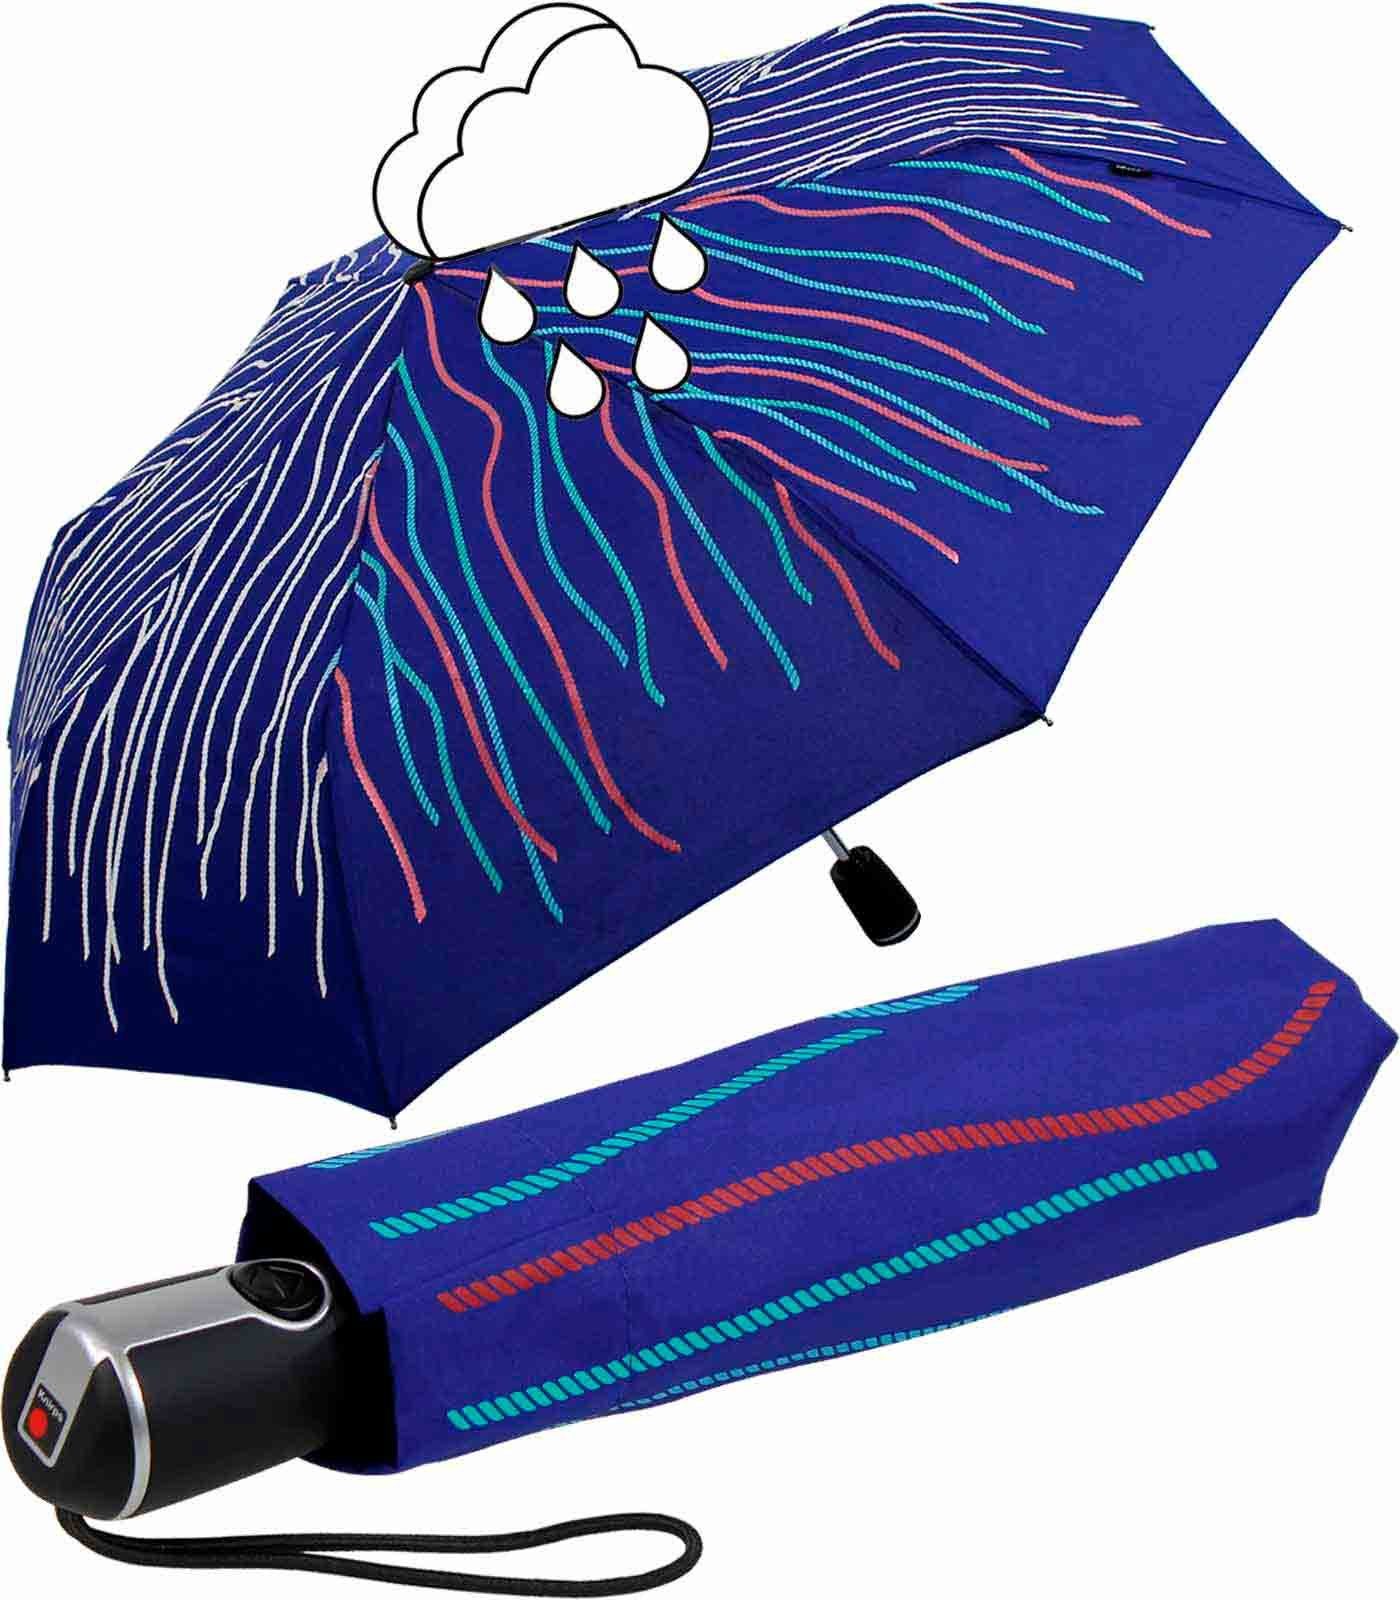 Knirps® Langregenschirm Large Duomatic mit Farbwechsel - Wet Print Rope, bei Nässe färben sich die weißen Fäden bunt blau